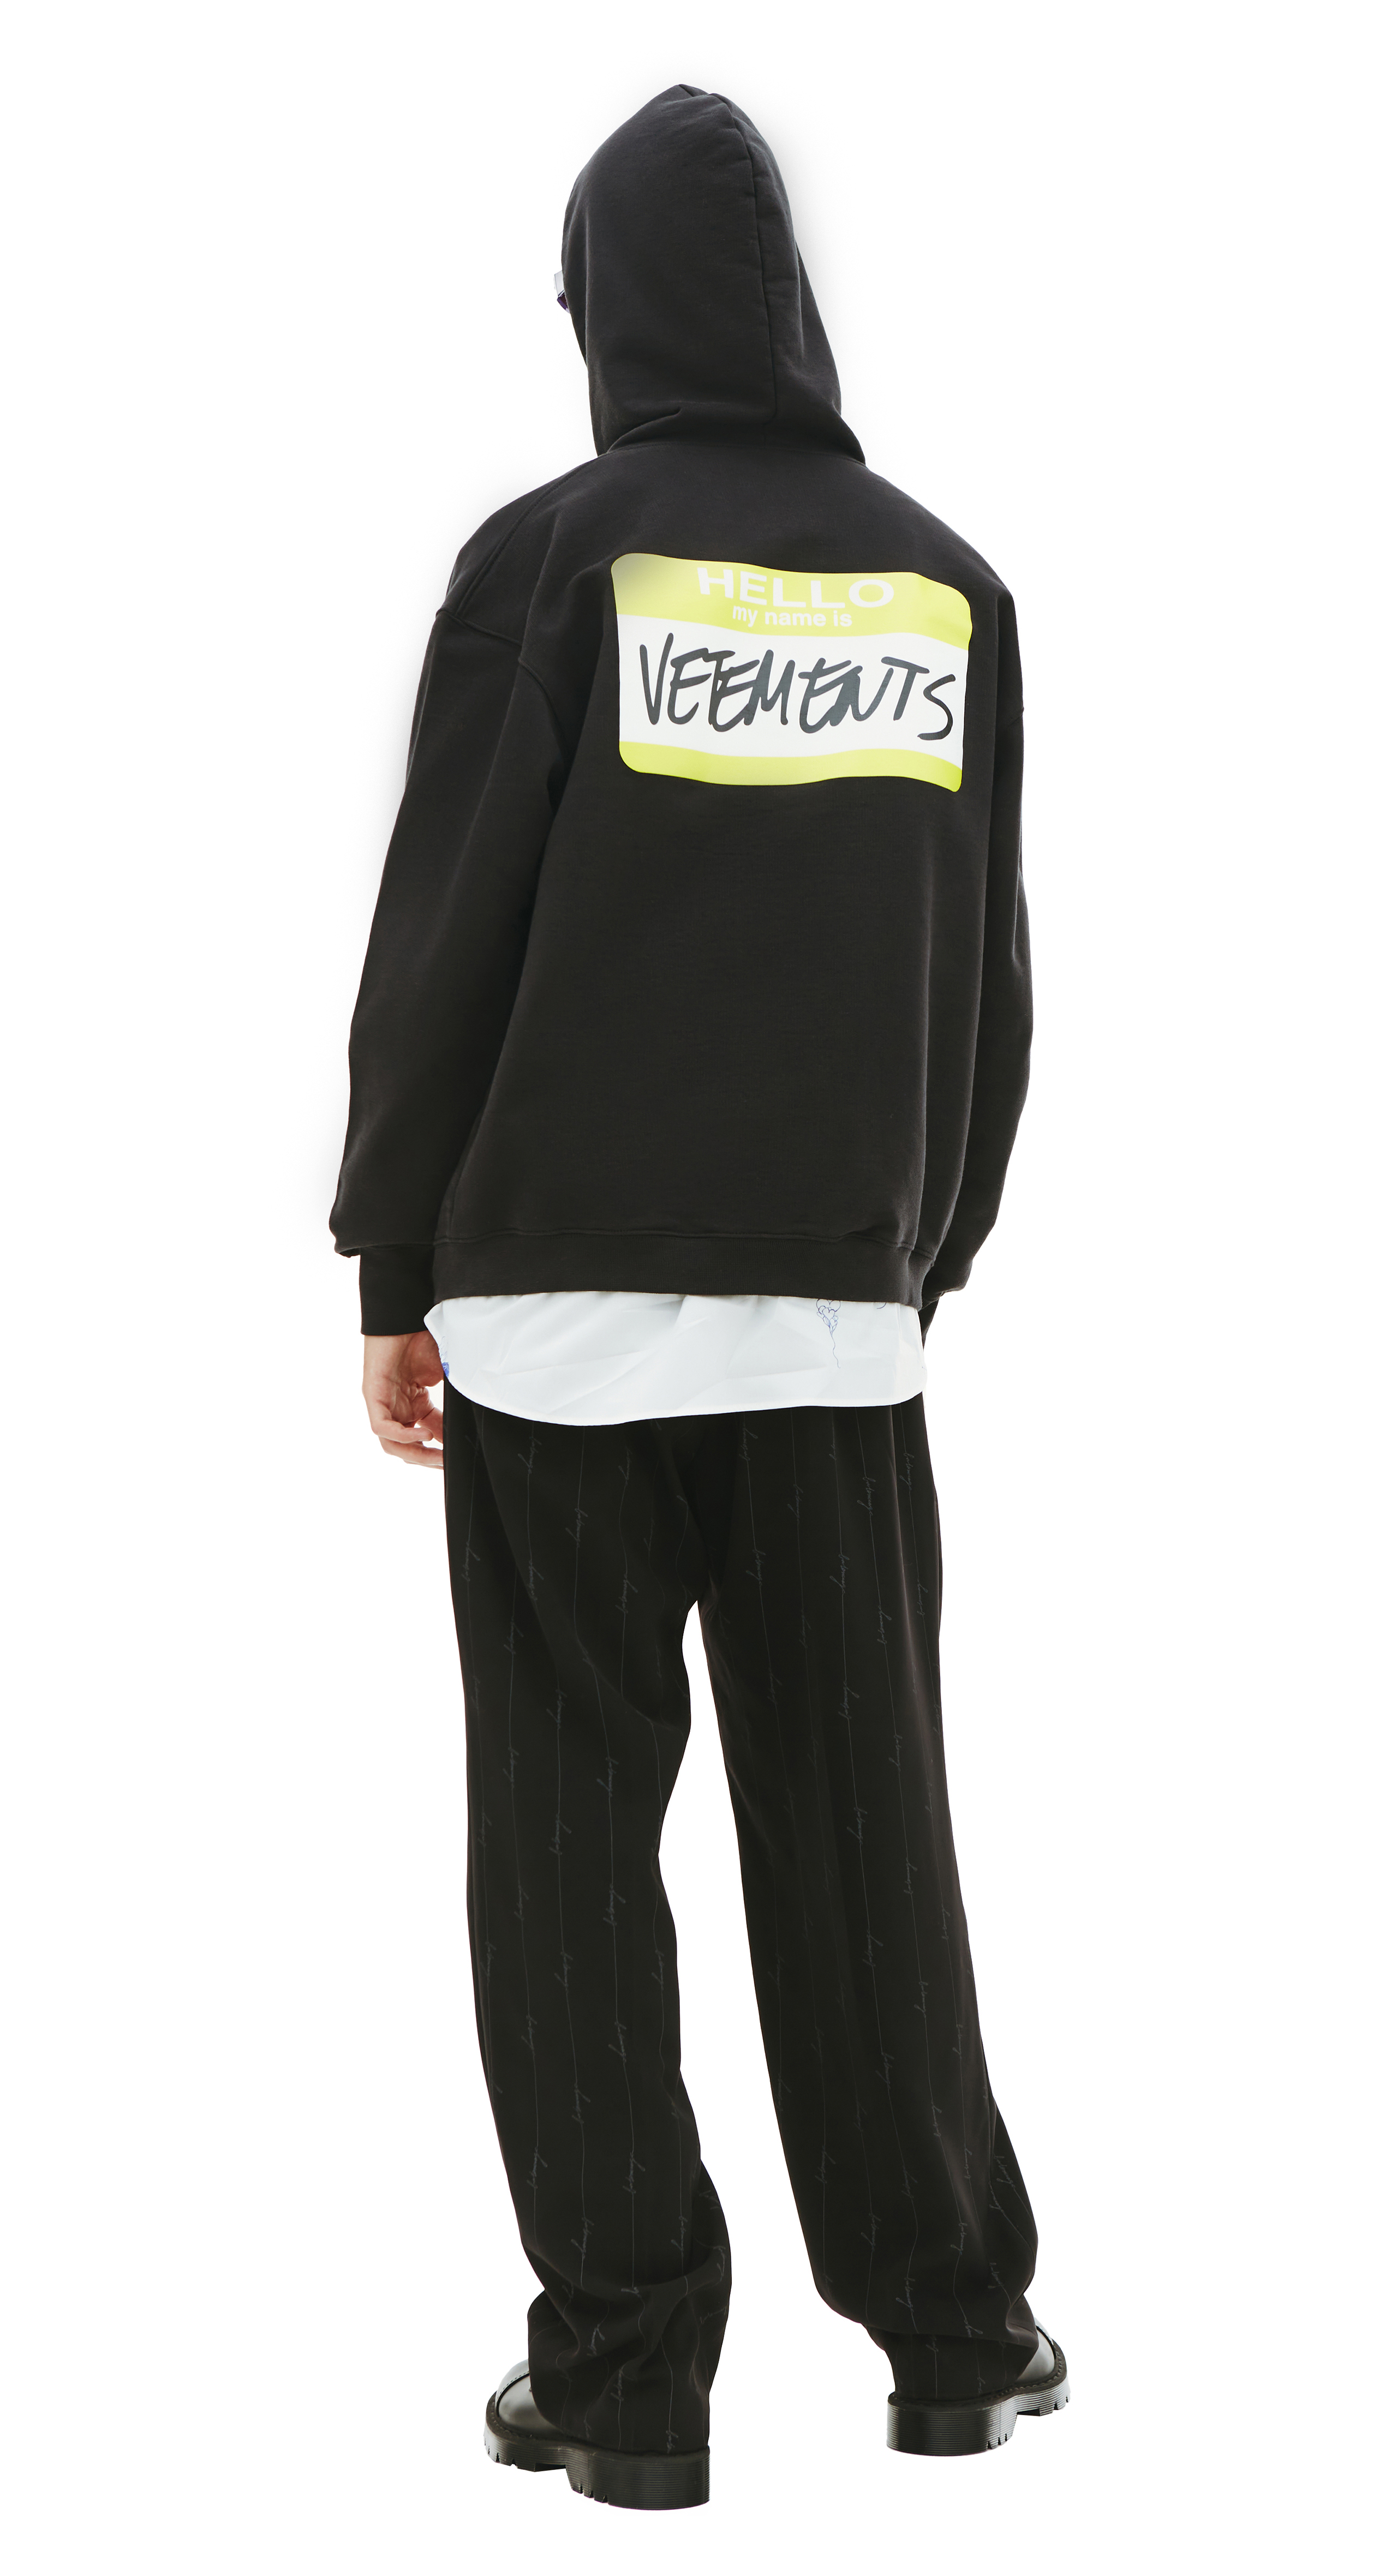 Buy VETEMENTS men black 'my name is' zip hoodie for $570 online on